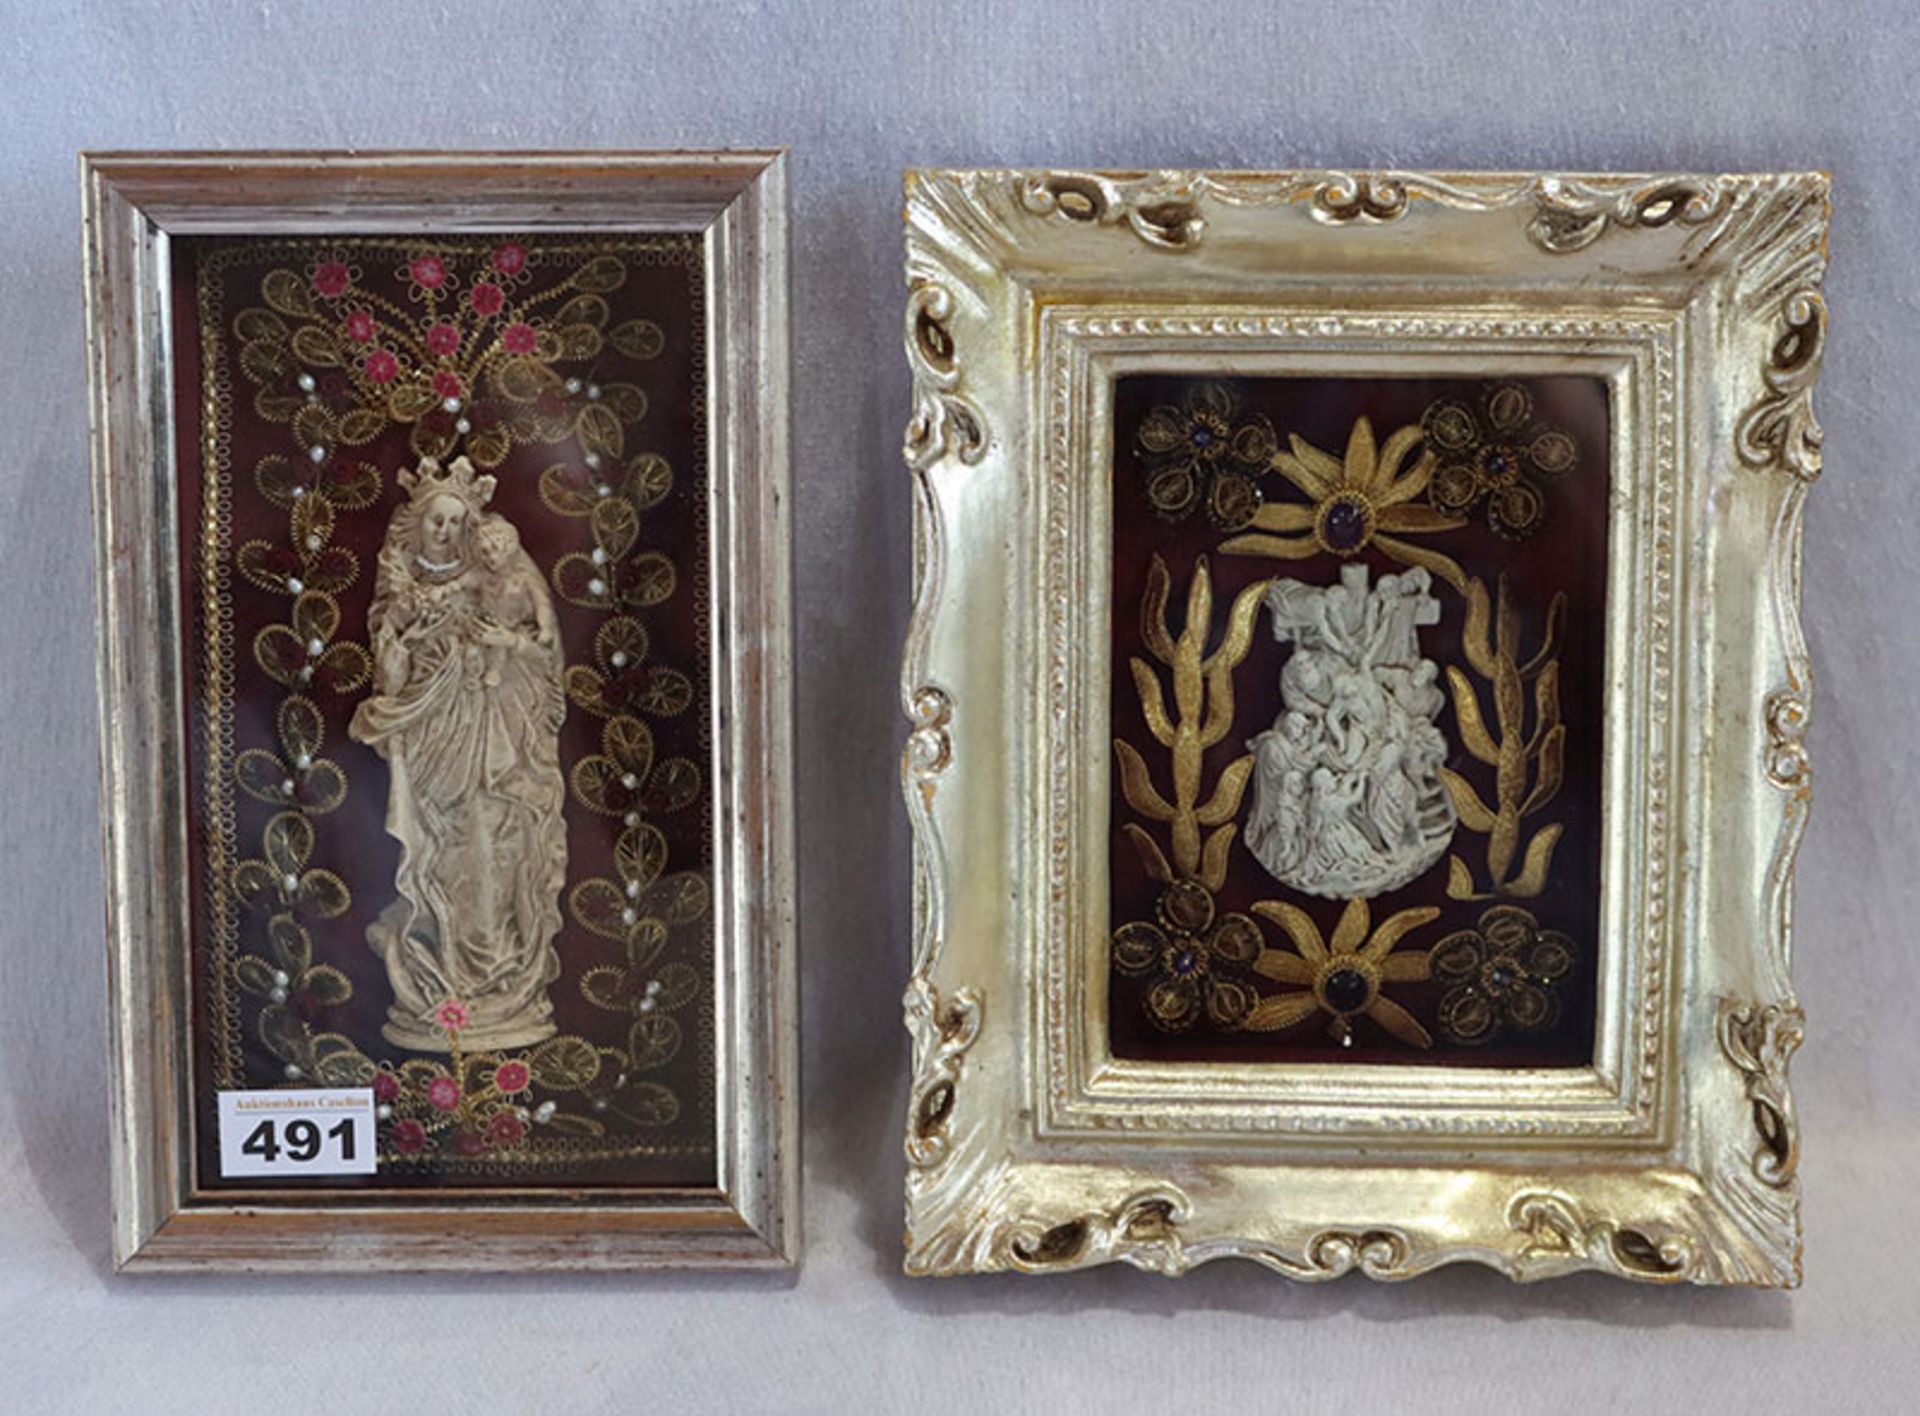 2 Klosterarbeiten mit Reliefdarstellungen, Kreuzabnahme und Maria mit Kind', reich verziert, unter